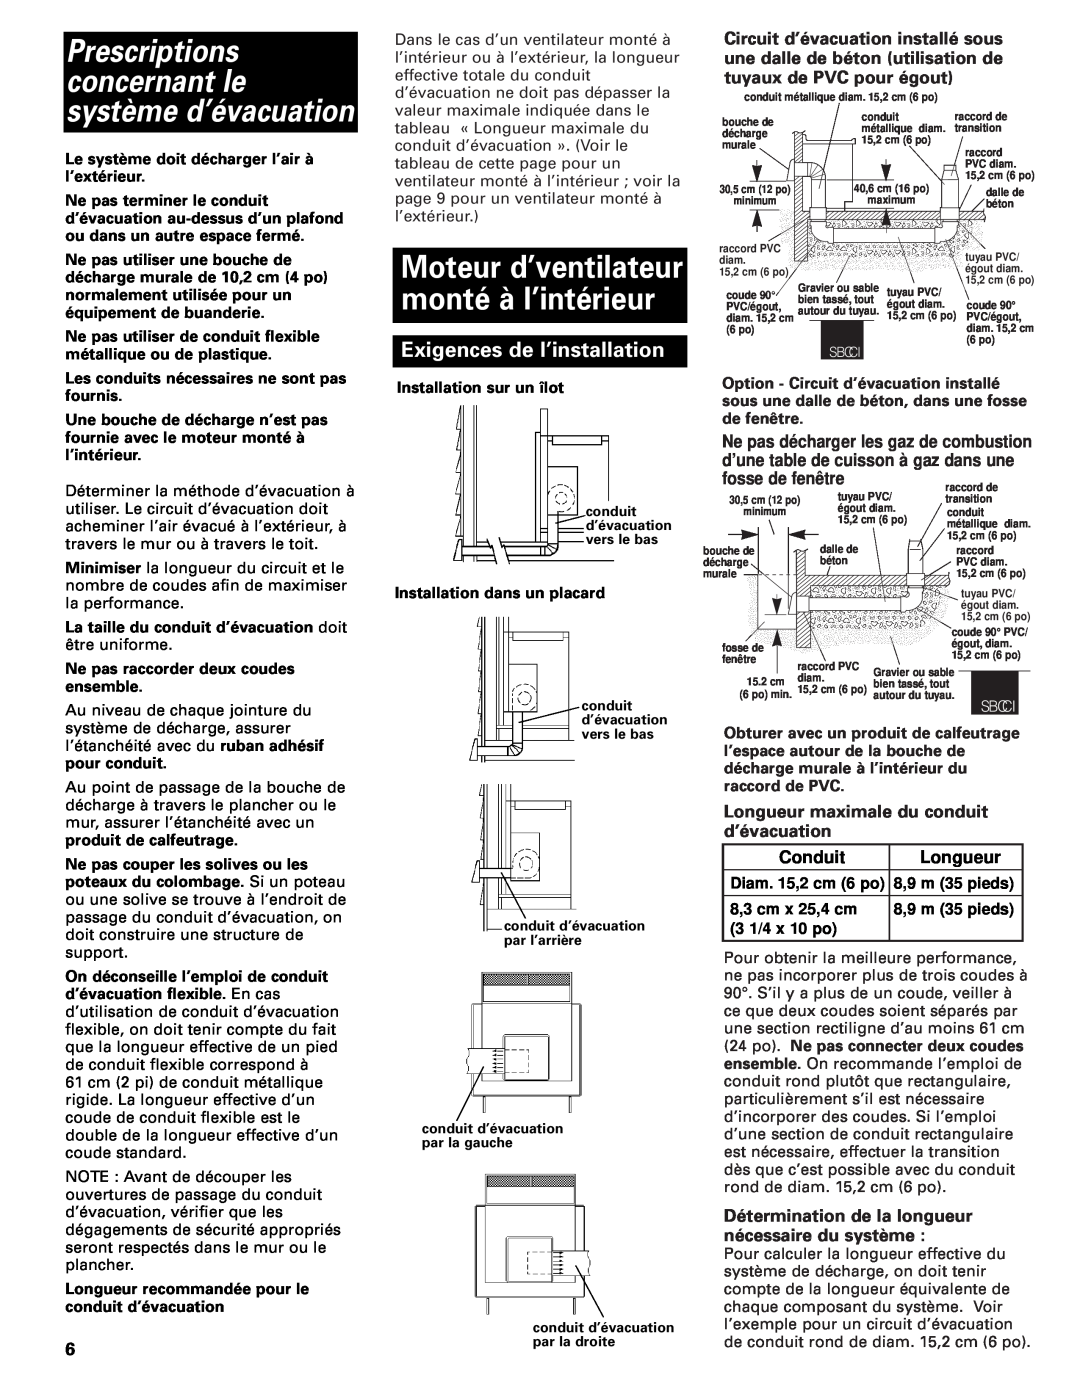 Whirlpool Vent system installation instructions Exigences de l’installation, fosse de fenêtre, Conduit, Longueur 